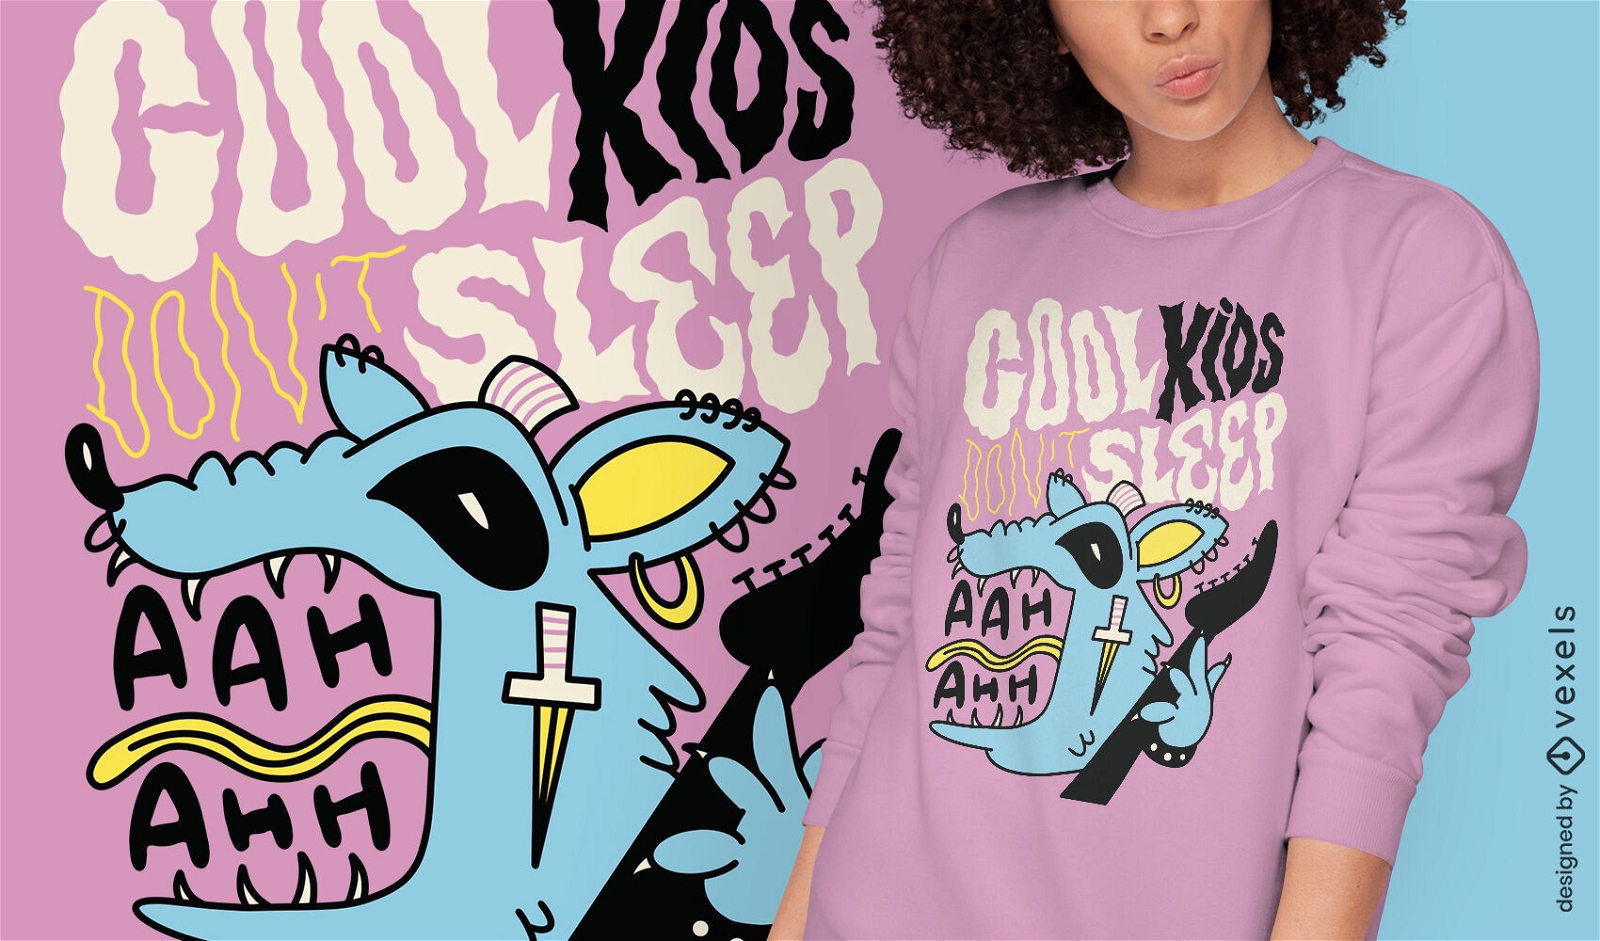 Punk rat animal with guitar t-shirt design